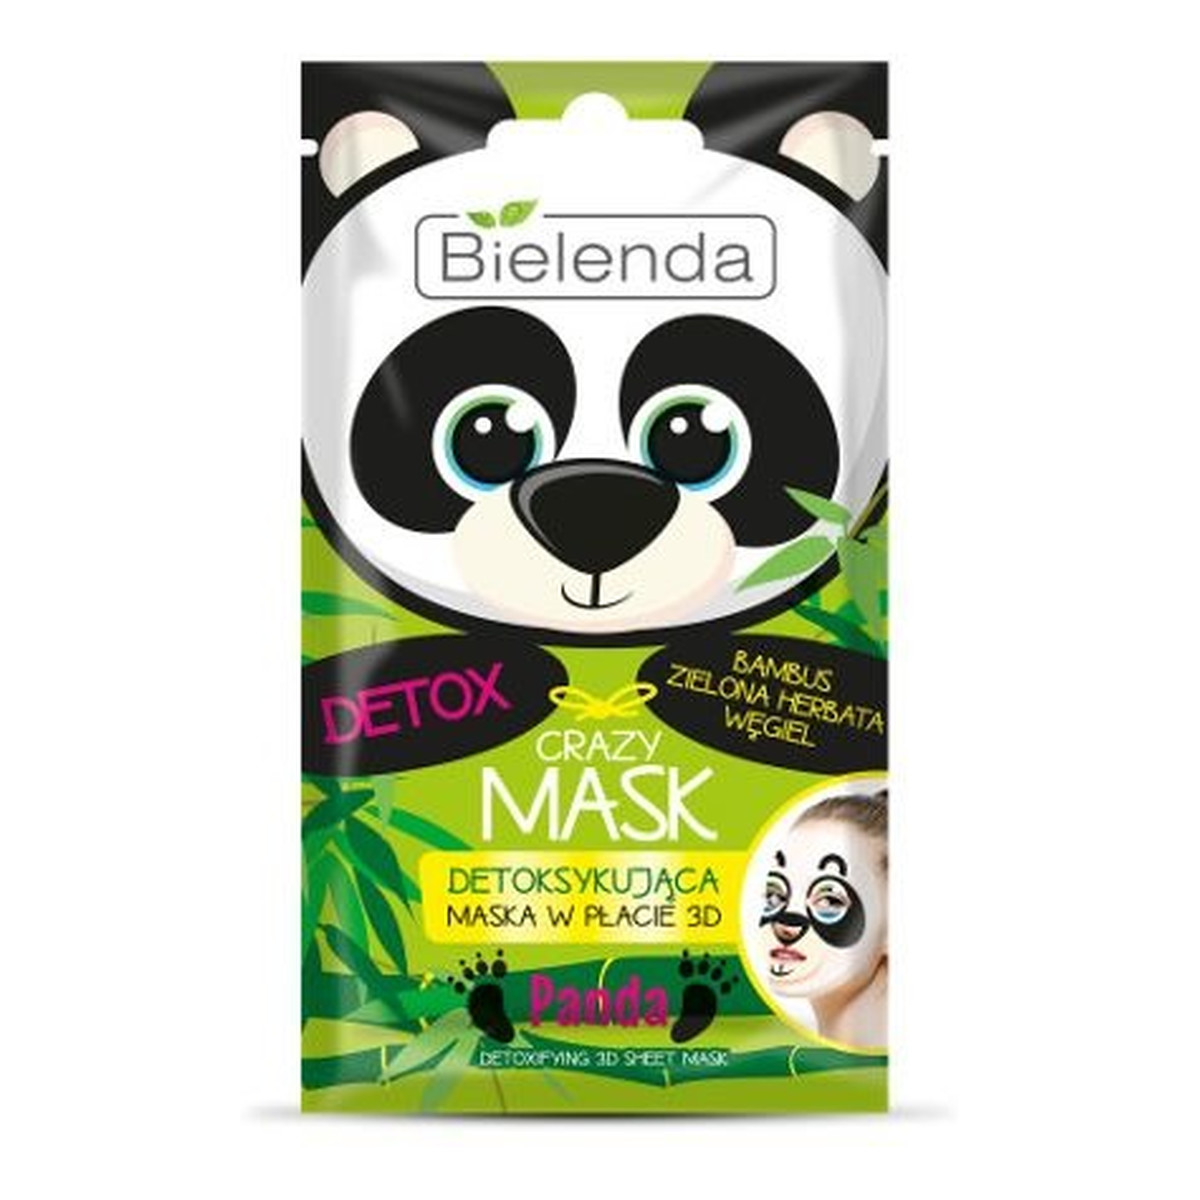 Bielenda Crazy Mask Maska detoksykująca w płacie 3D Panda